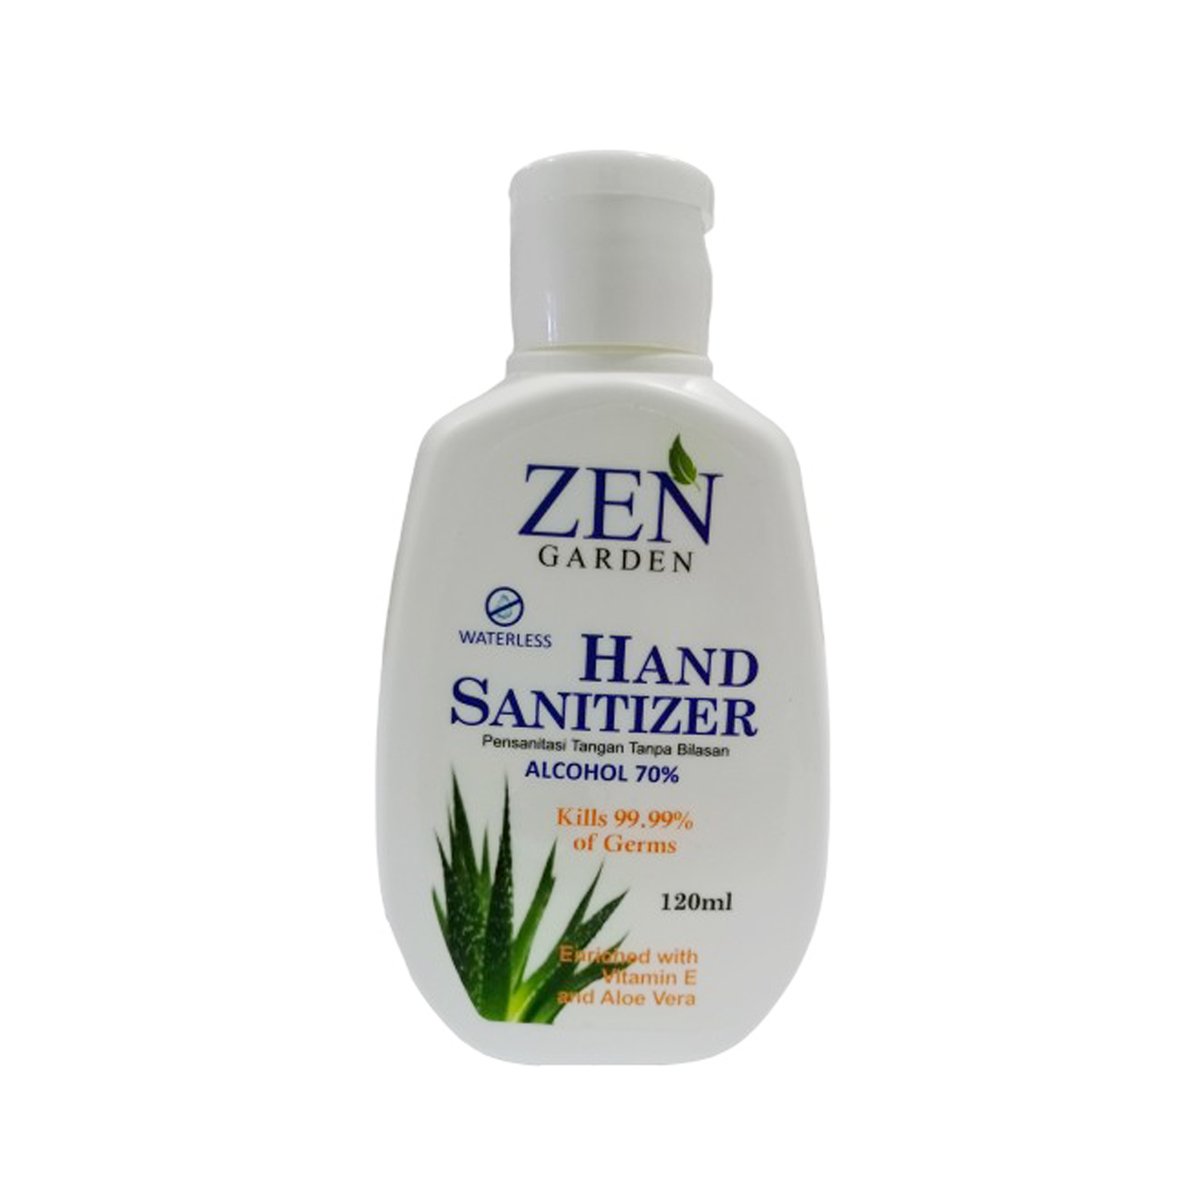 Zen Garden Hand Sanitizer 120ml